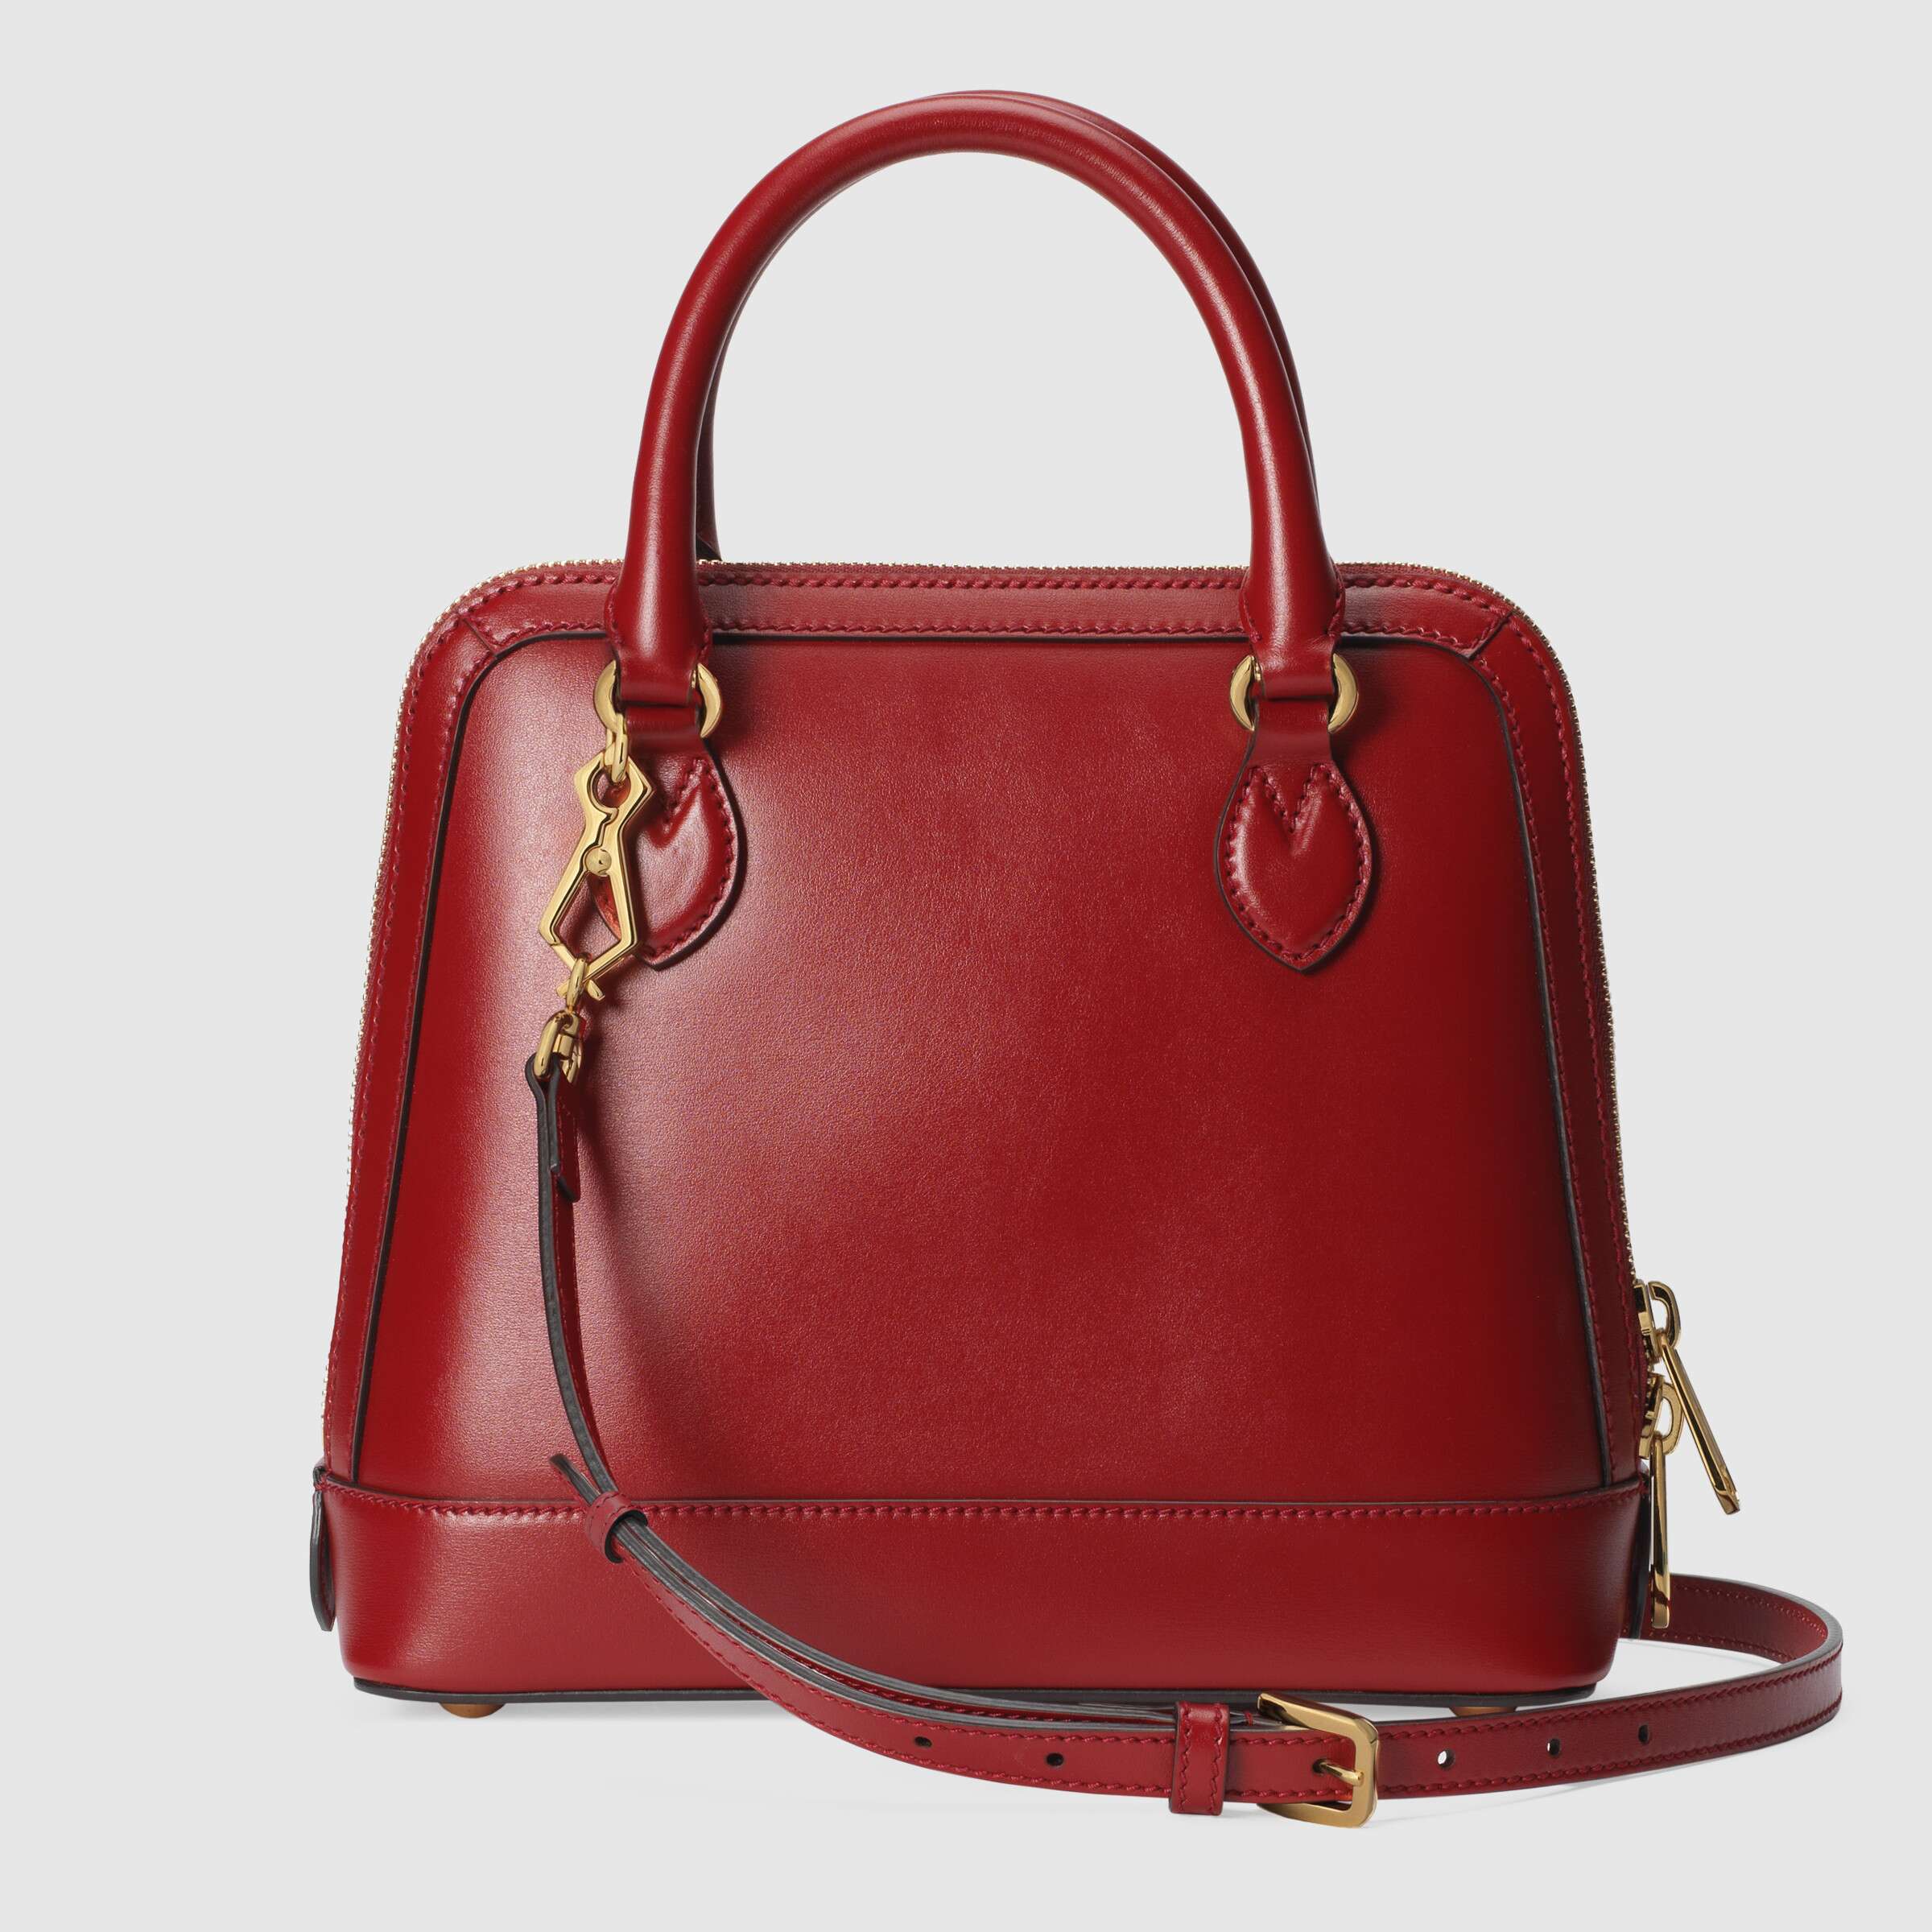 Gucci 1955 Horsebit Small Top Handle Bag Red